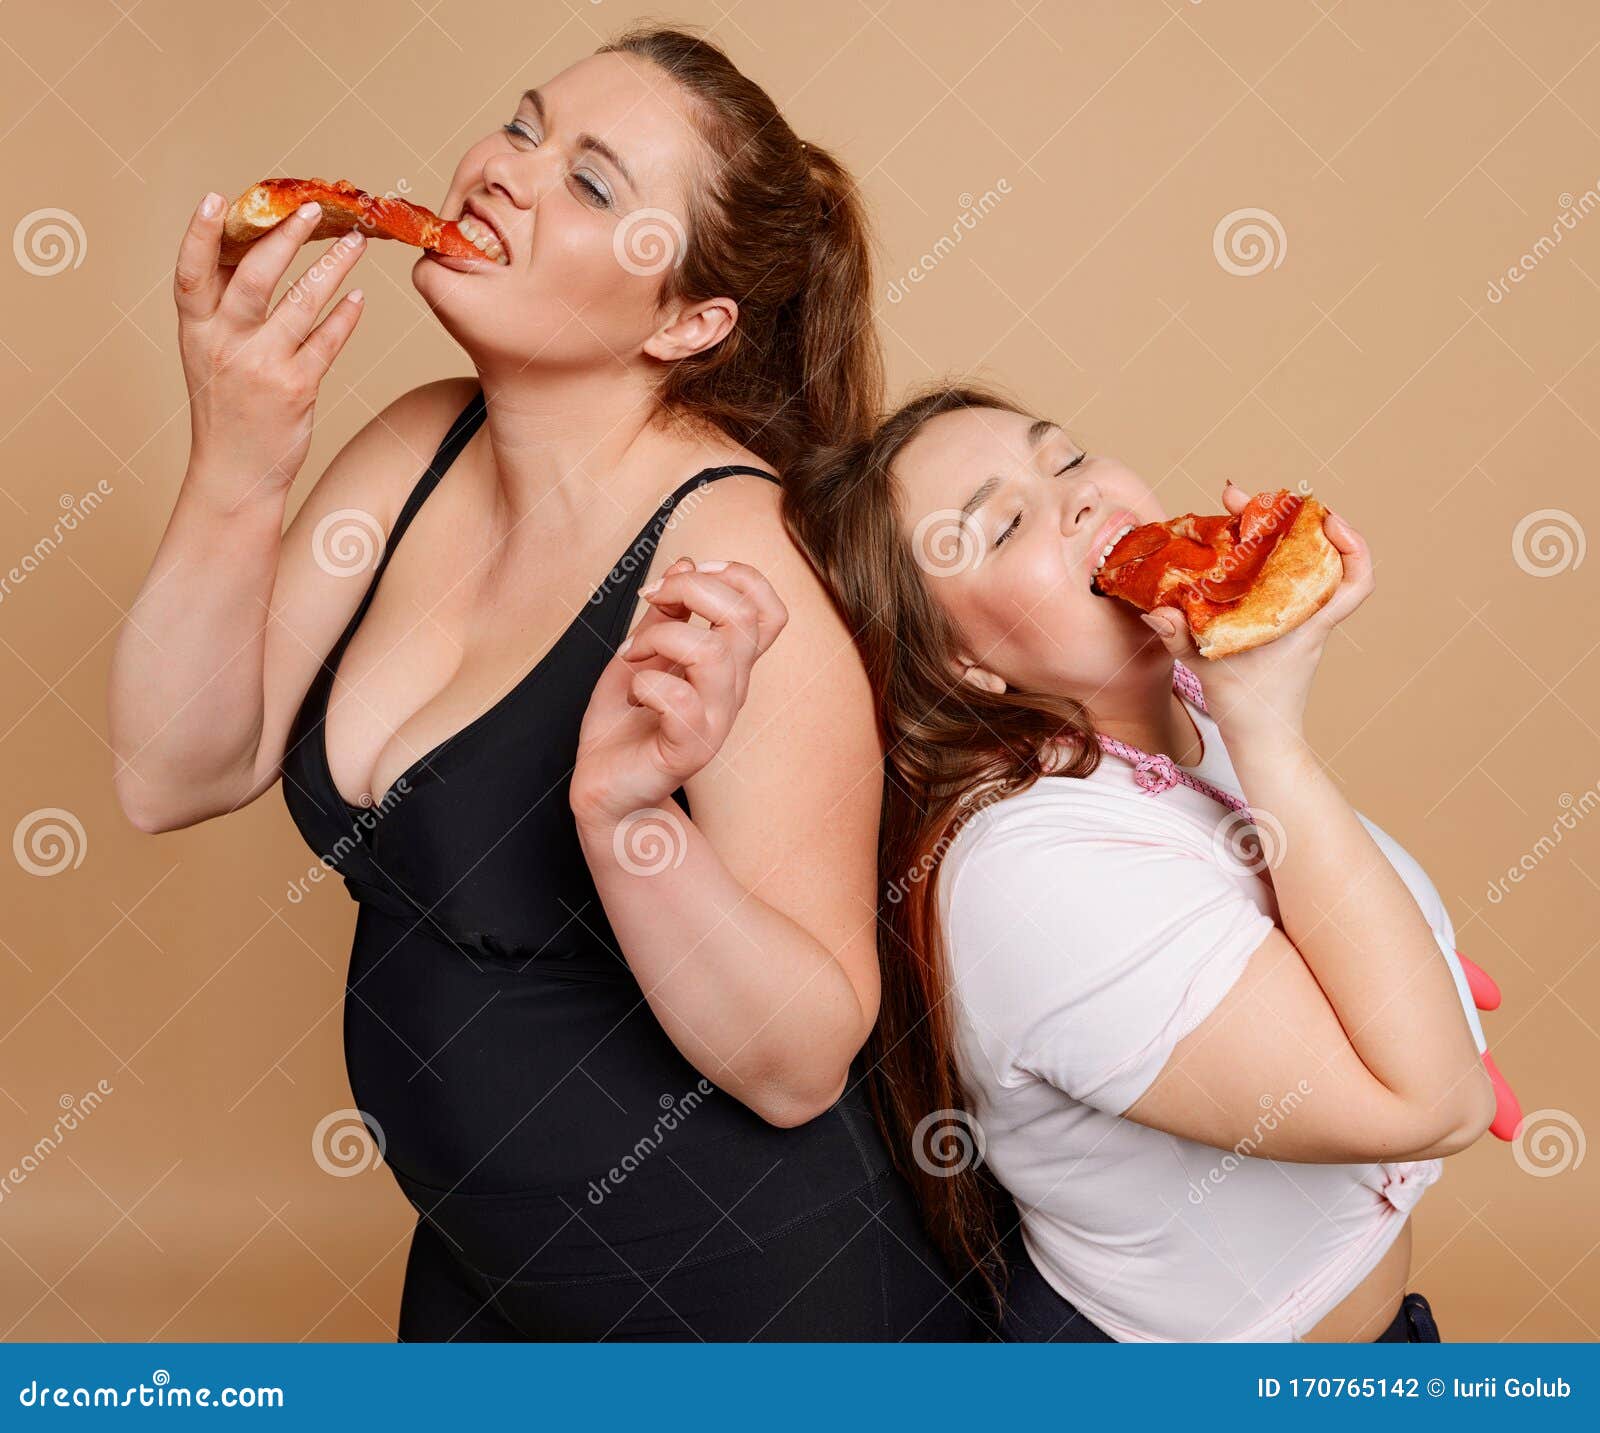 Голодная женщина видео. Голодная толстуха. Толстая женщина есть пиццу.